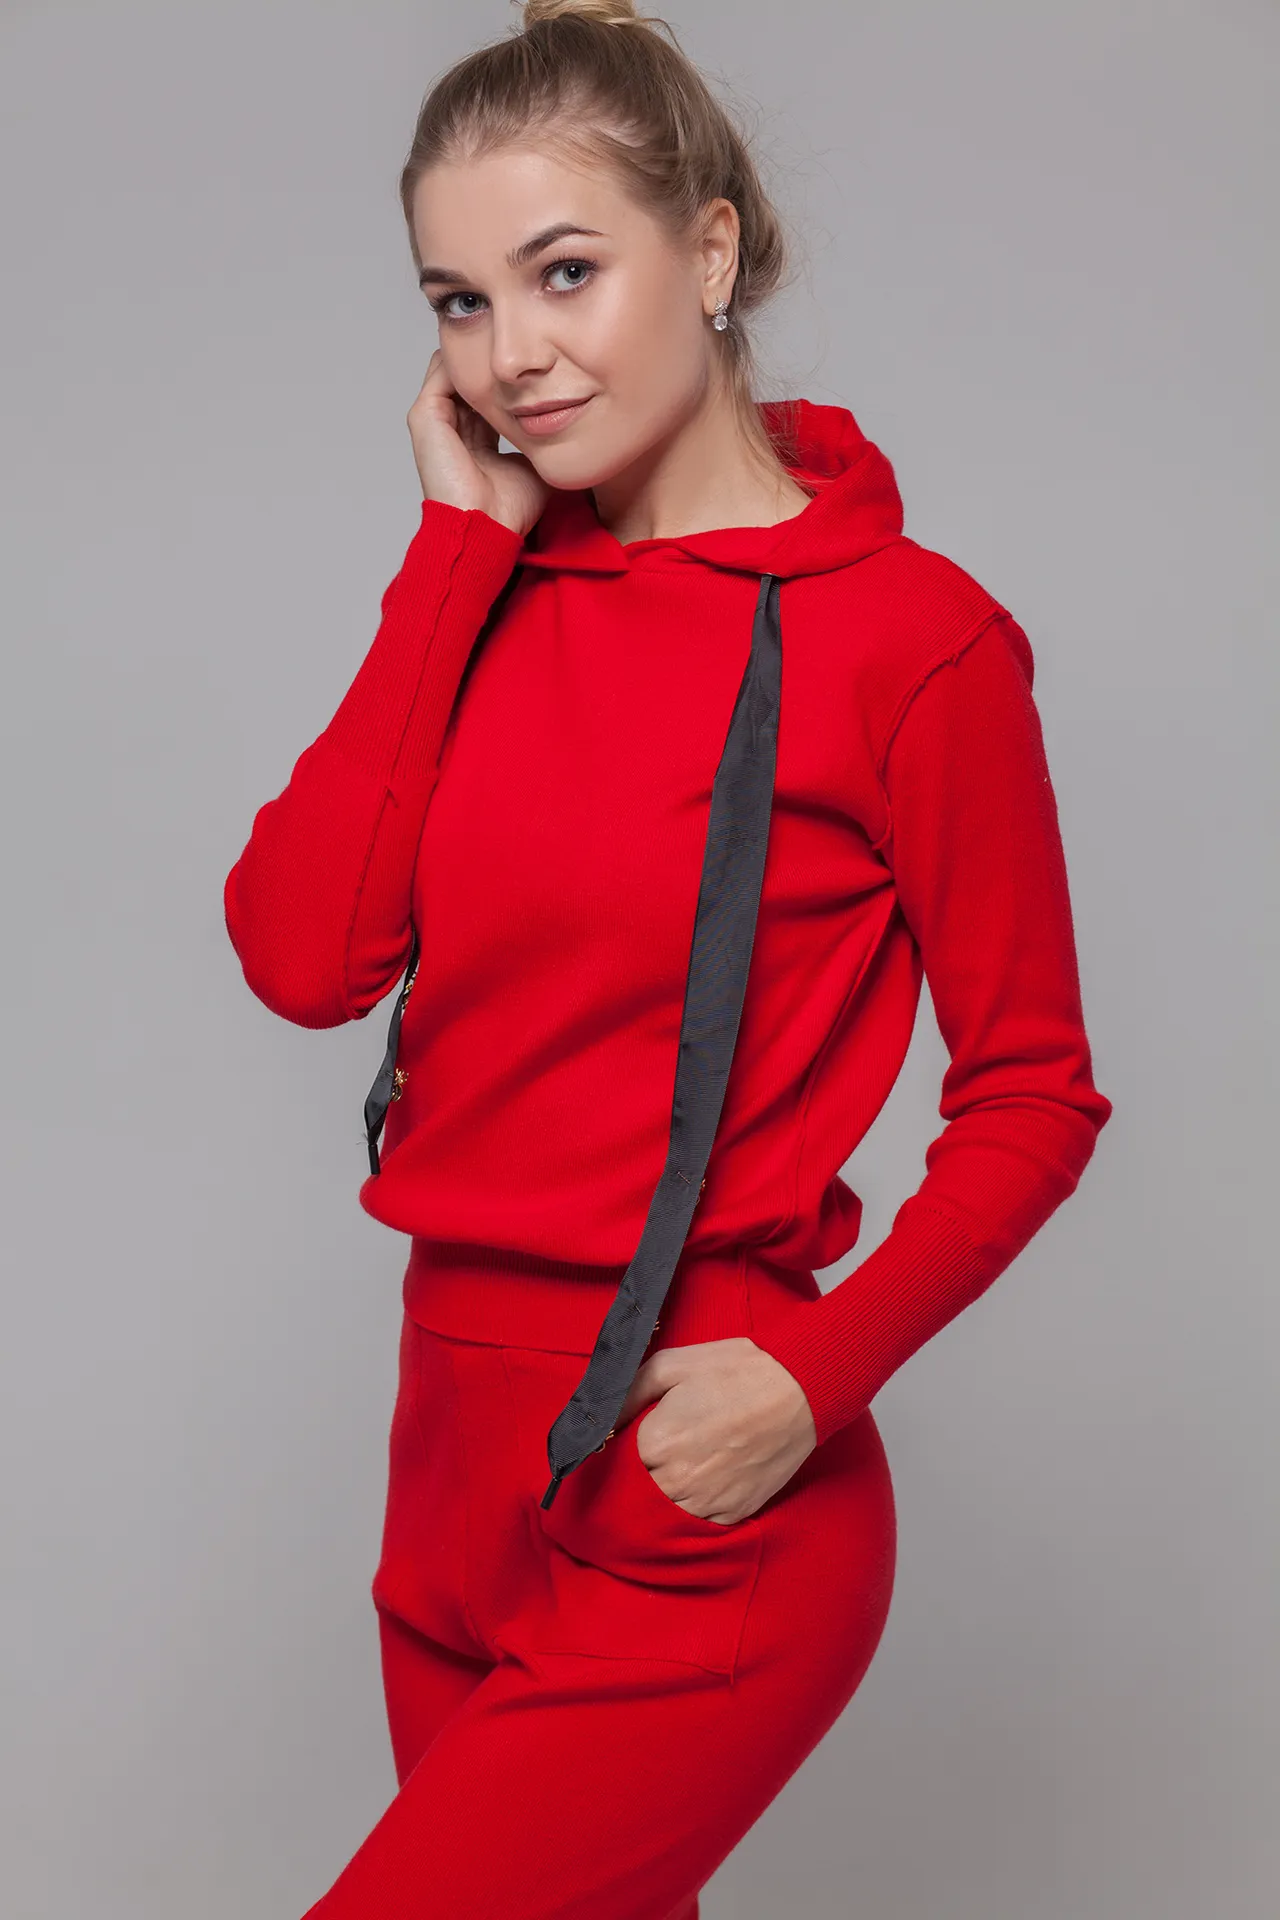 Спортивный костюм женский красный с капюшоном интернет магазин